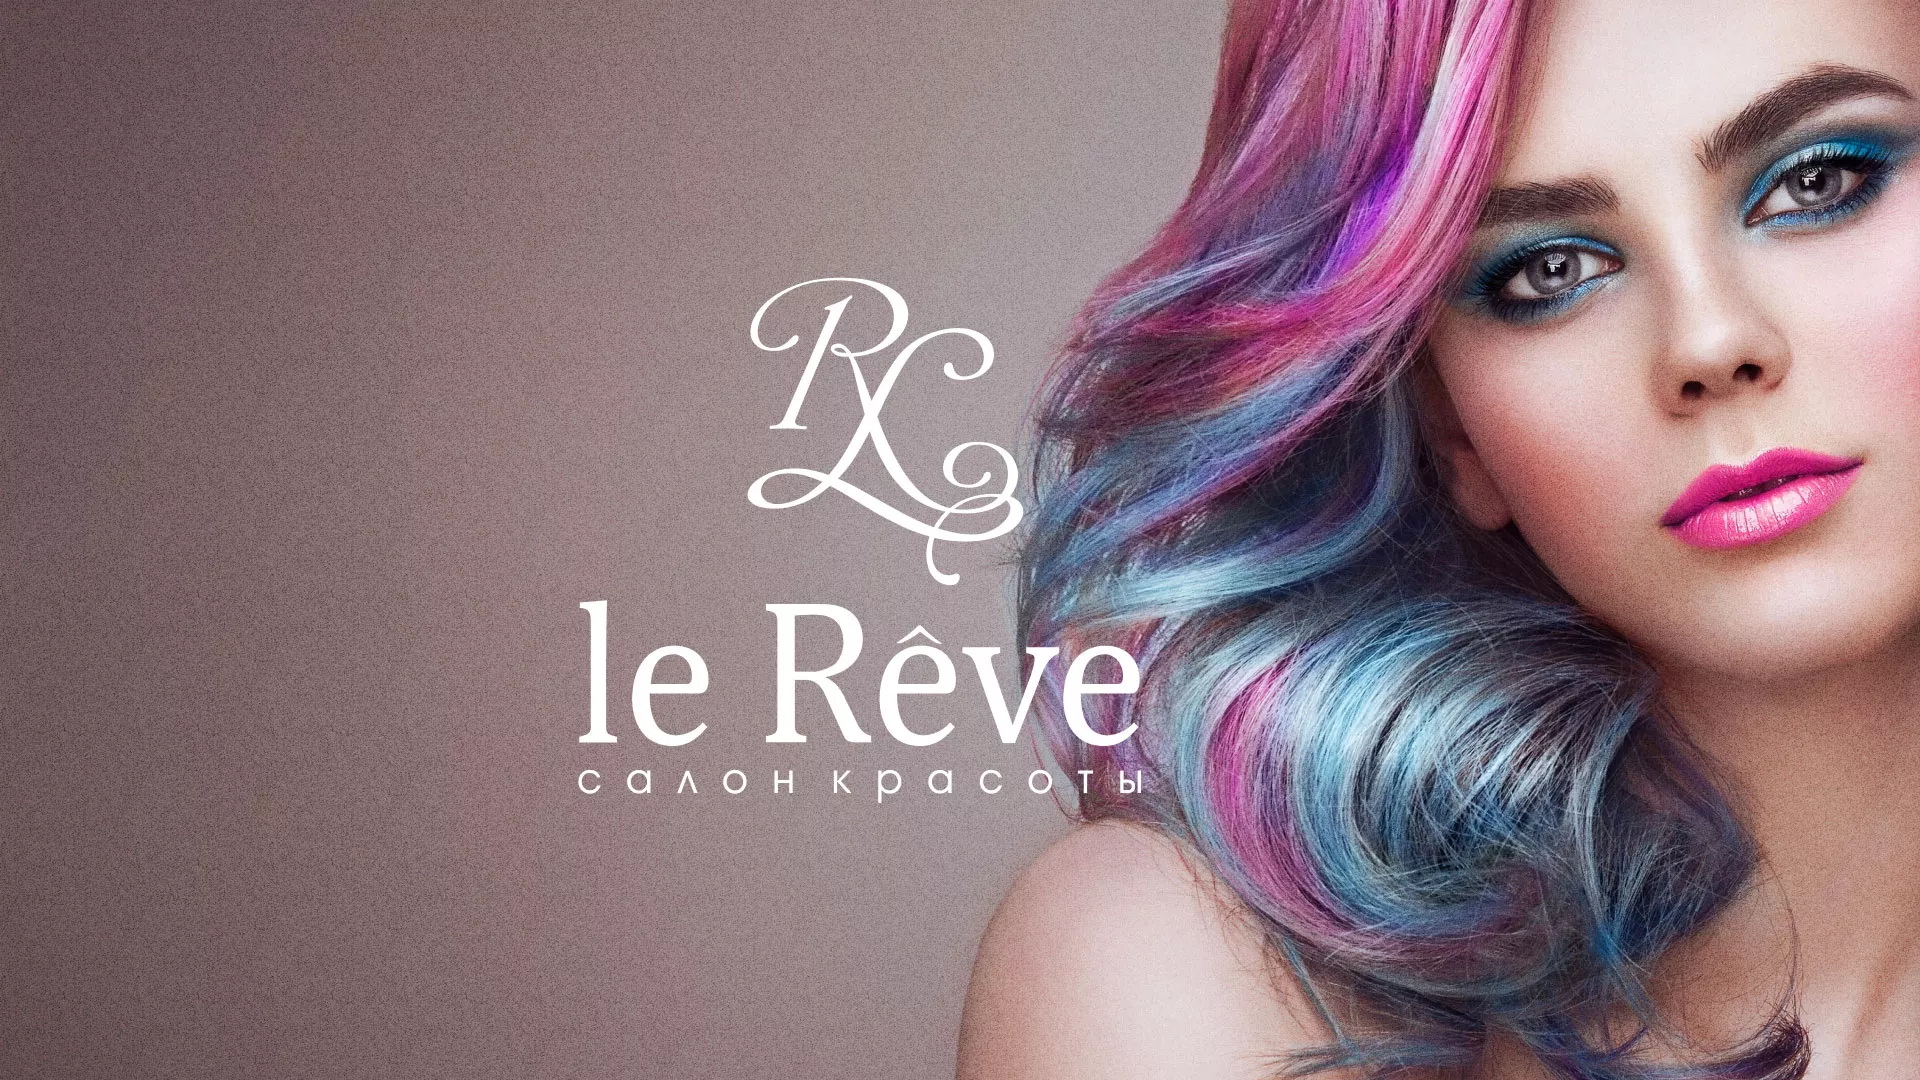 Создание сайта для салона красоты «Le Reve» в Якутске